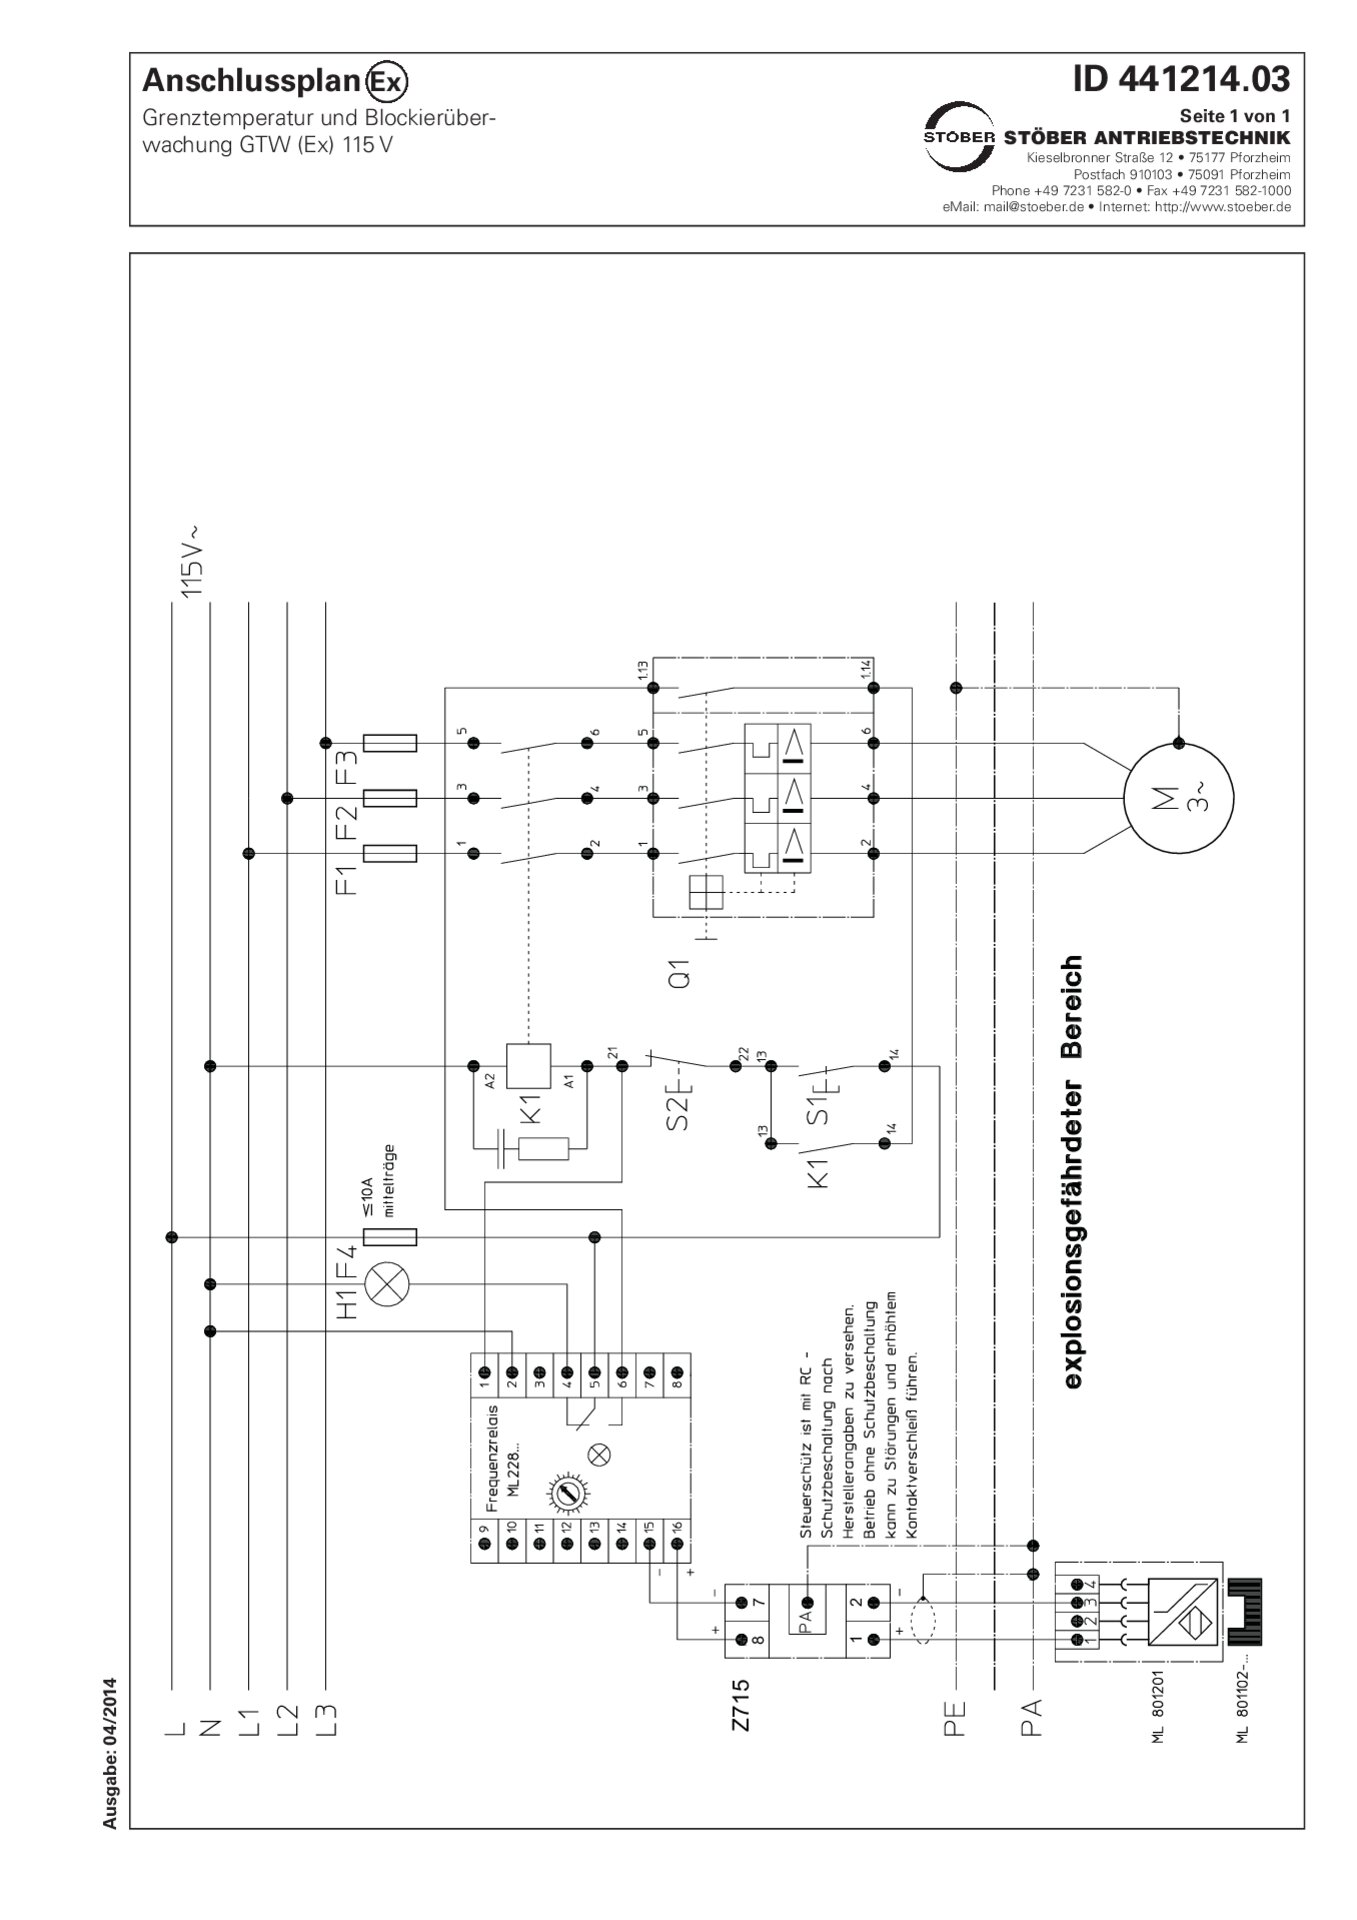 Plan de connexion Contrôleur de temperature limite et de blocage GTW (ADF) 115V